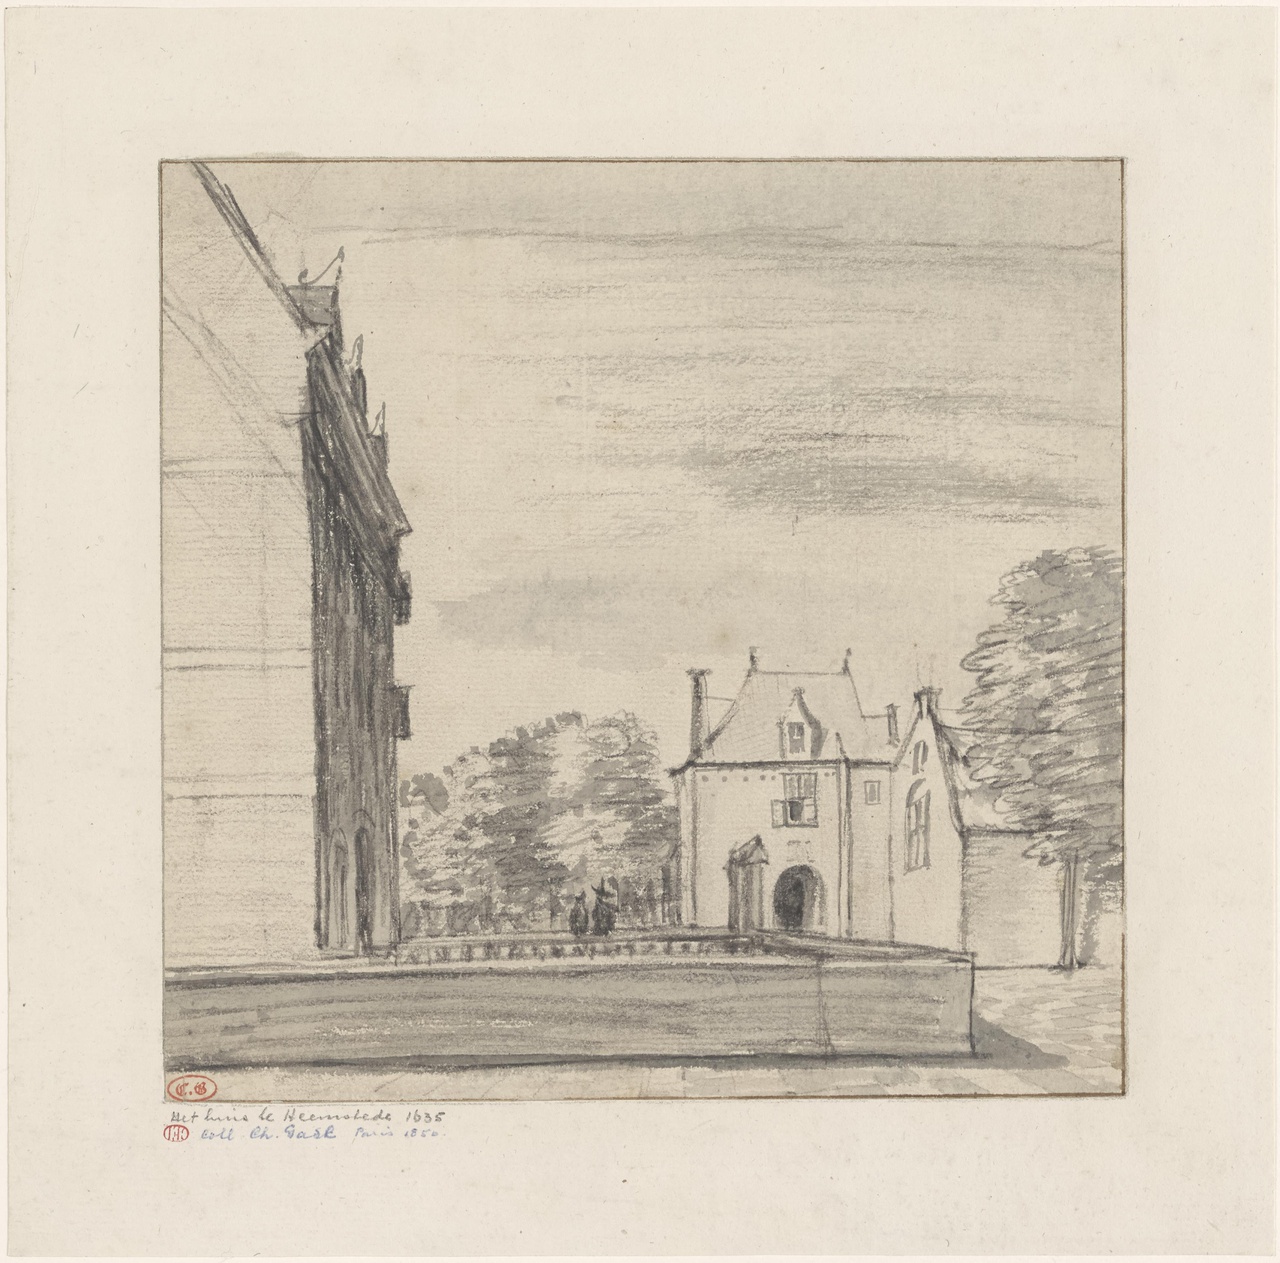 Zijaanzicht en poortgebouwen van kasteel Heemstede, verso: Omtrekschets van het poortgebouw